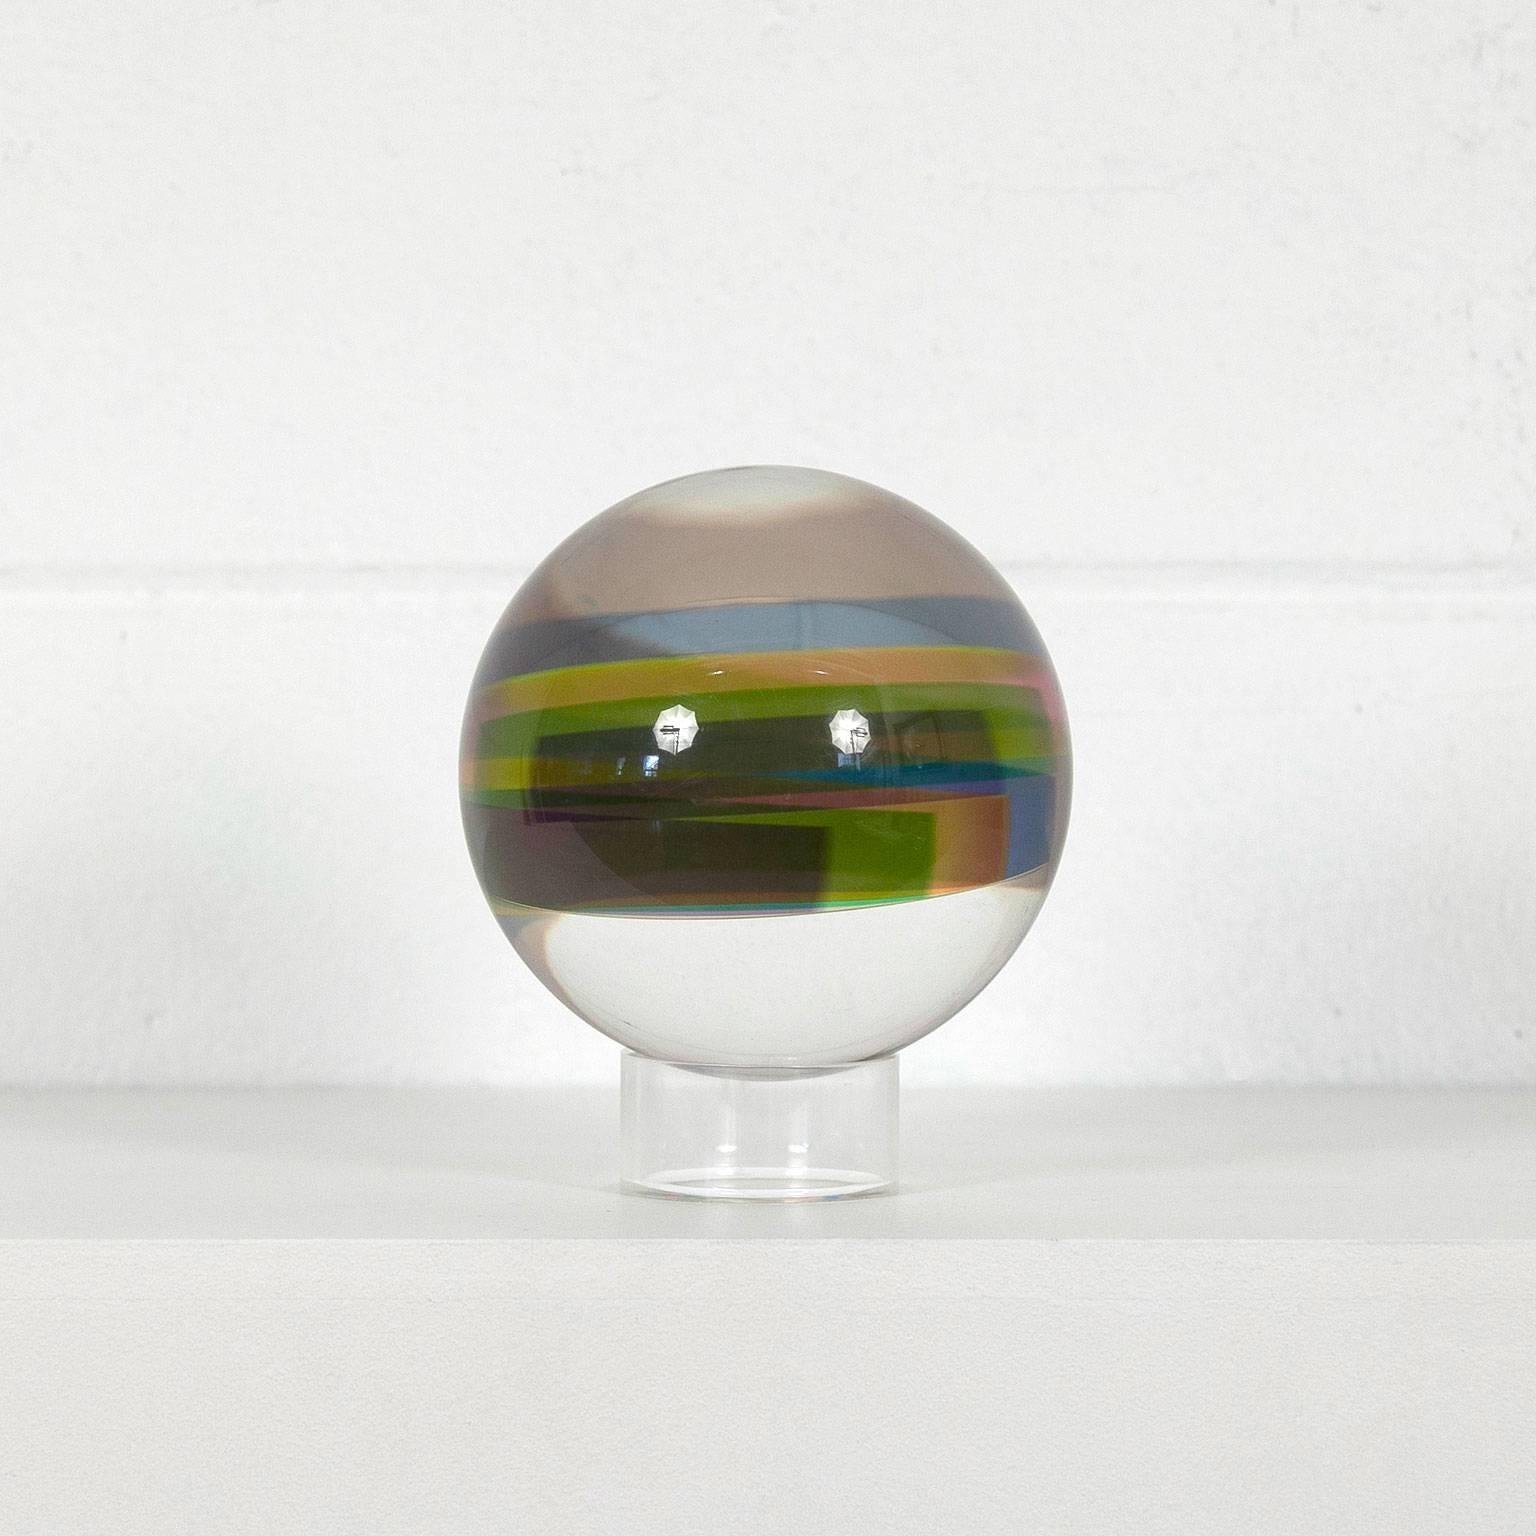 Spring Sphere - Minimalist Sculpture by Vasa Velizar Mihich